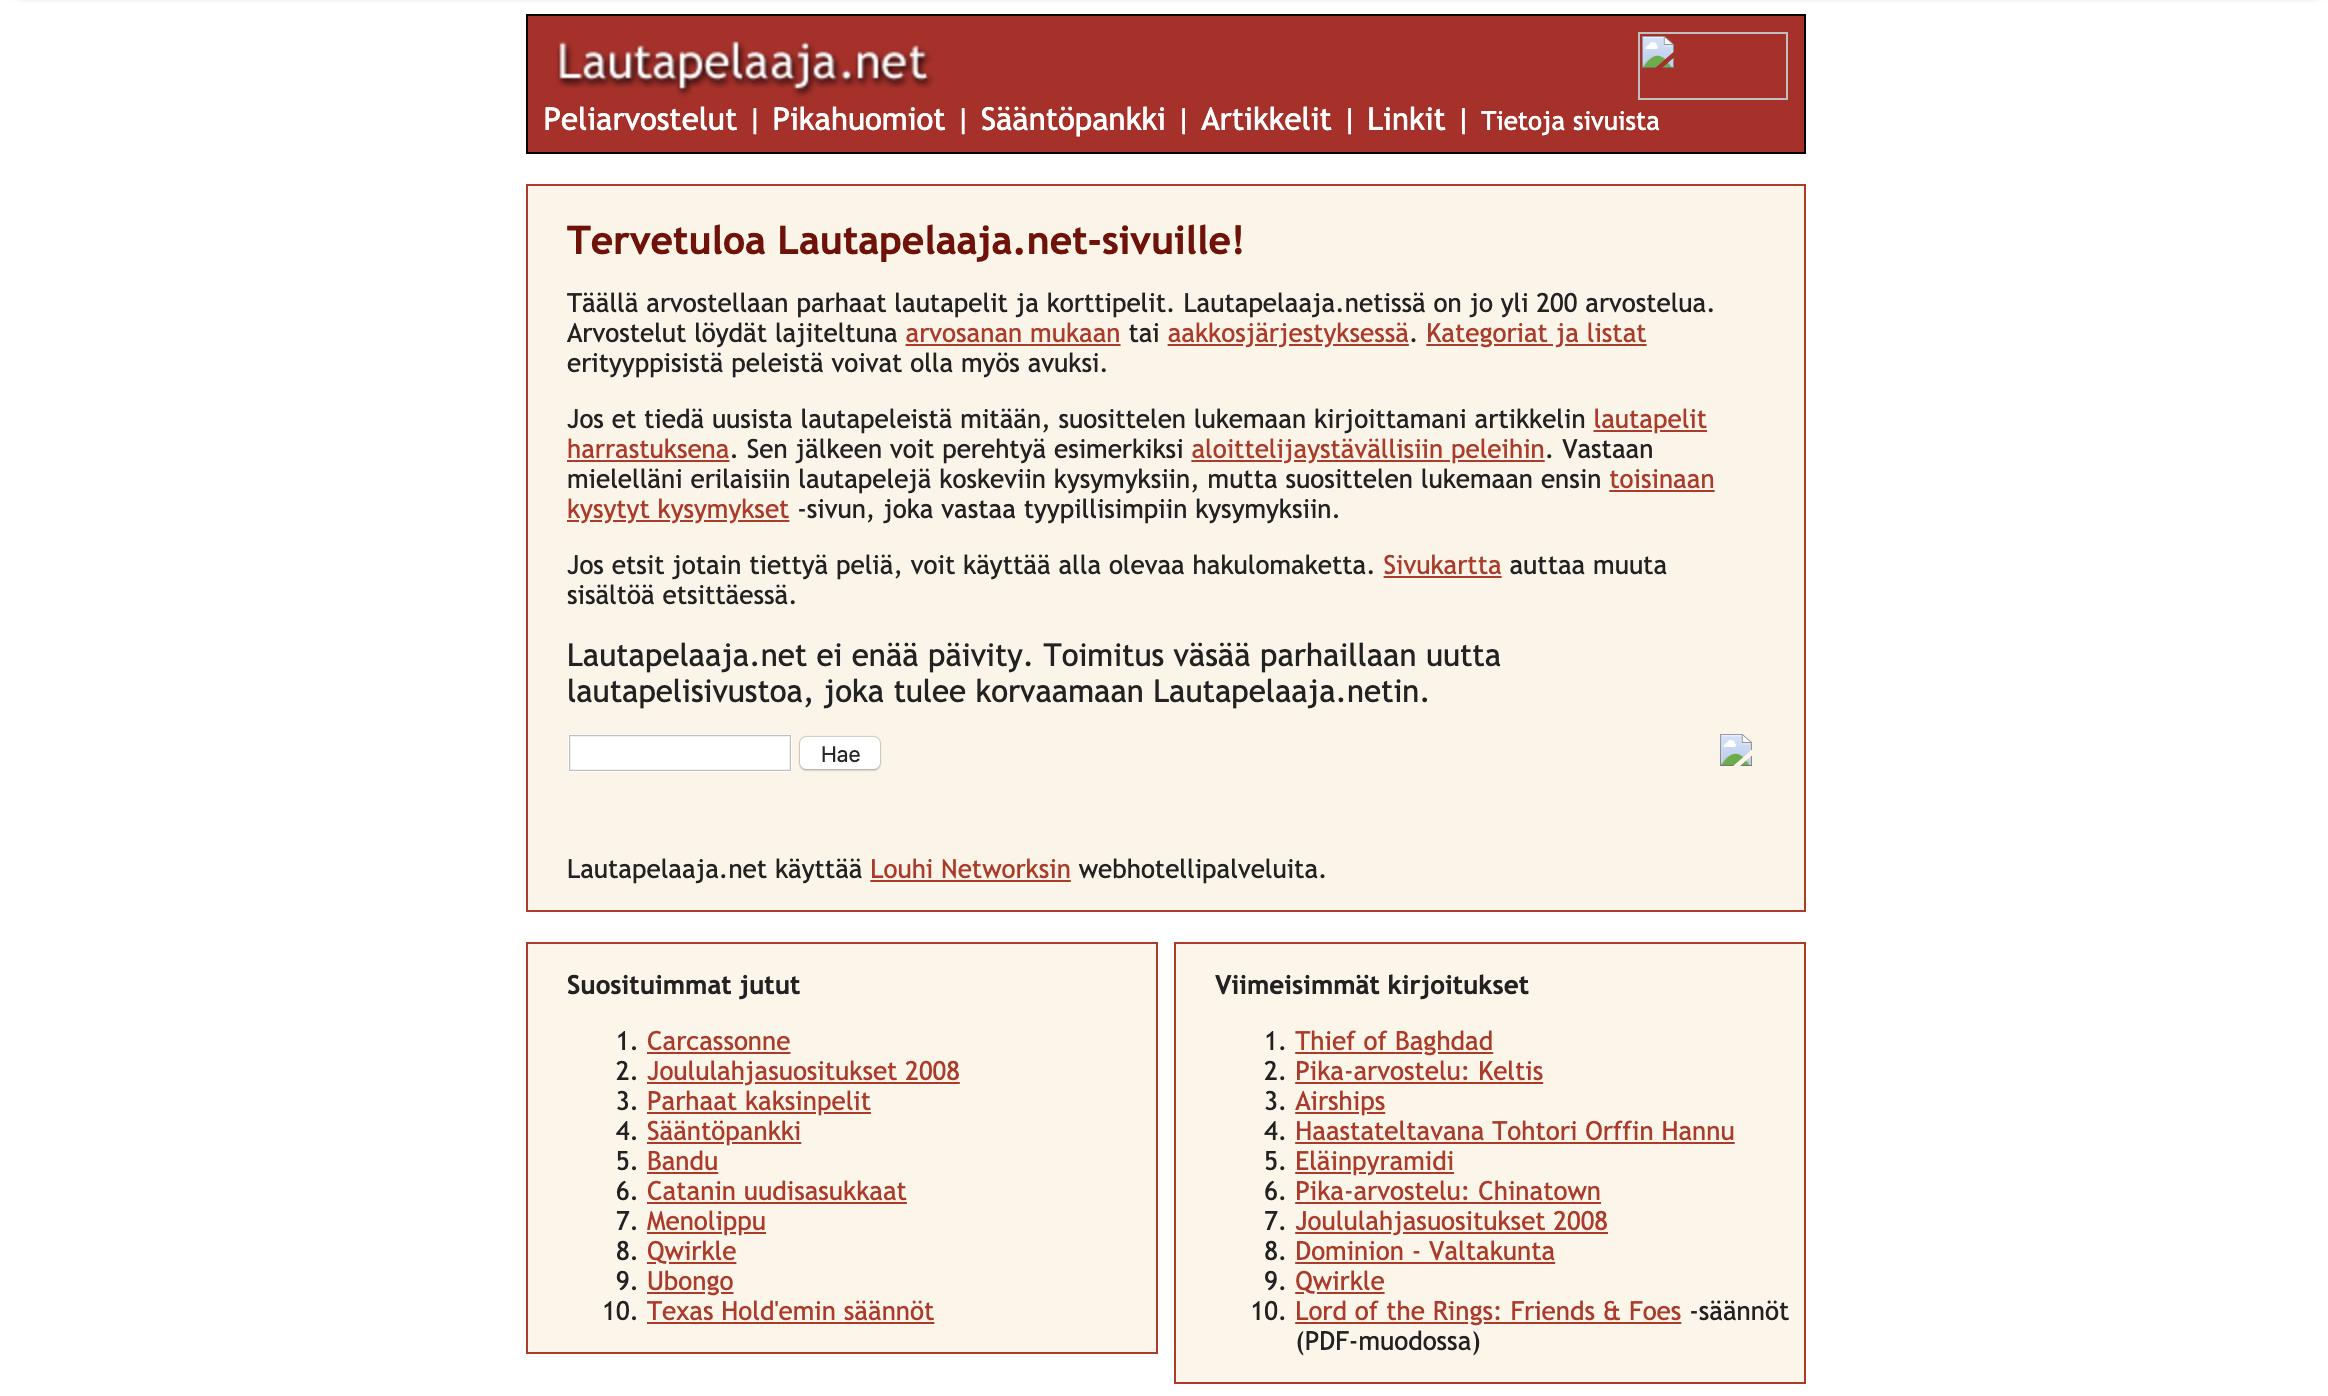 Ruutukaappaus Lautapelaaja.net-sivustolta toukokuulta 2009.